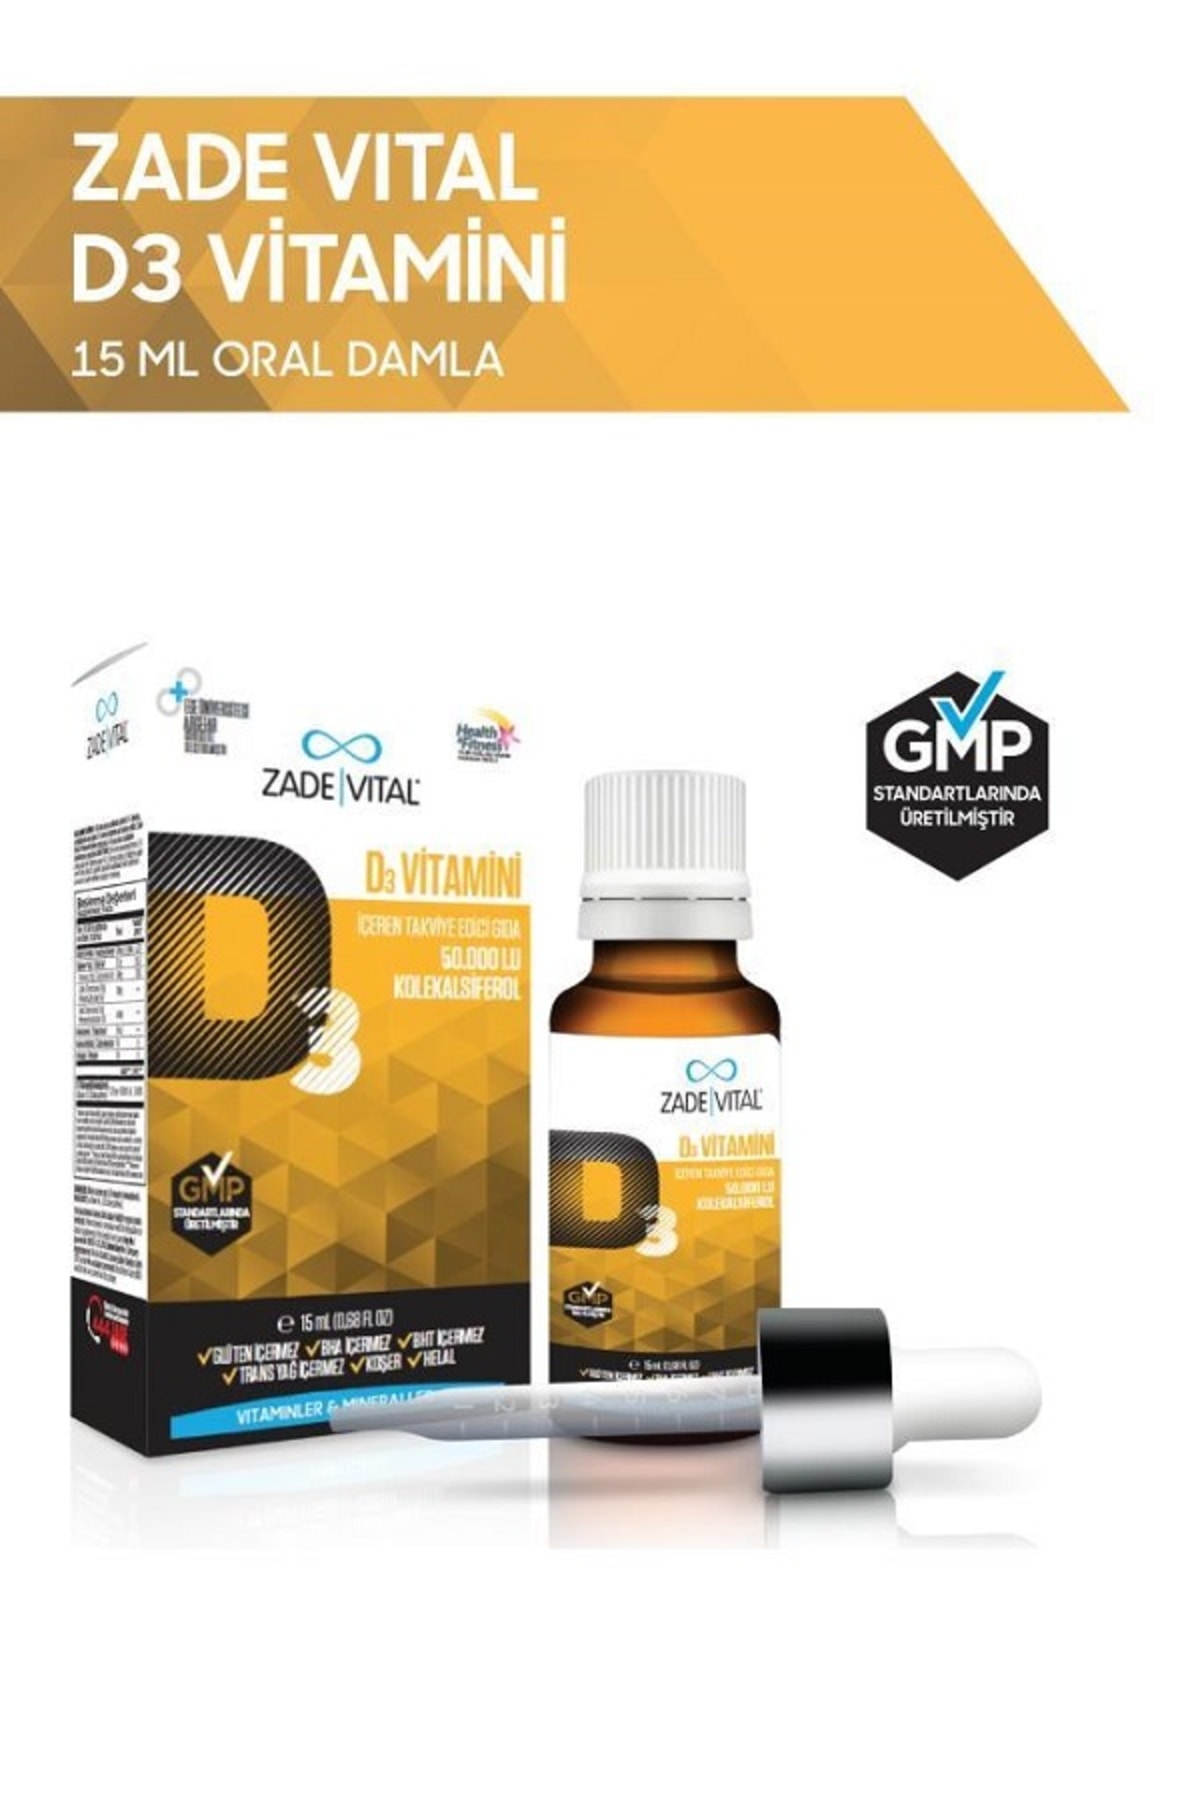 Zade Vital D3 Vitamini Oral Damla 15 ml